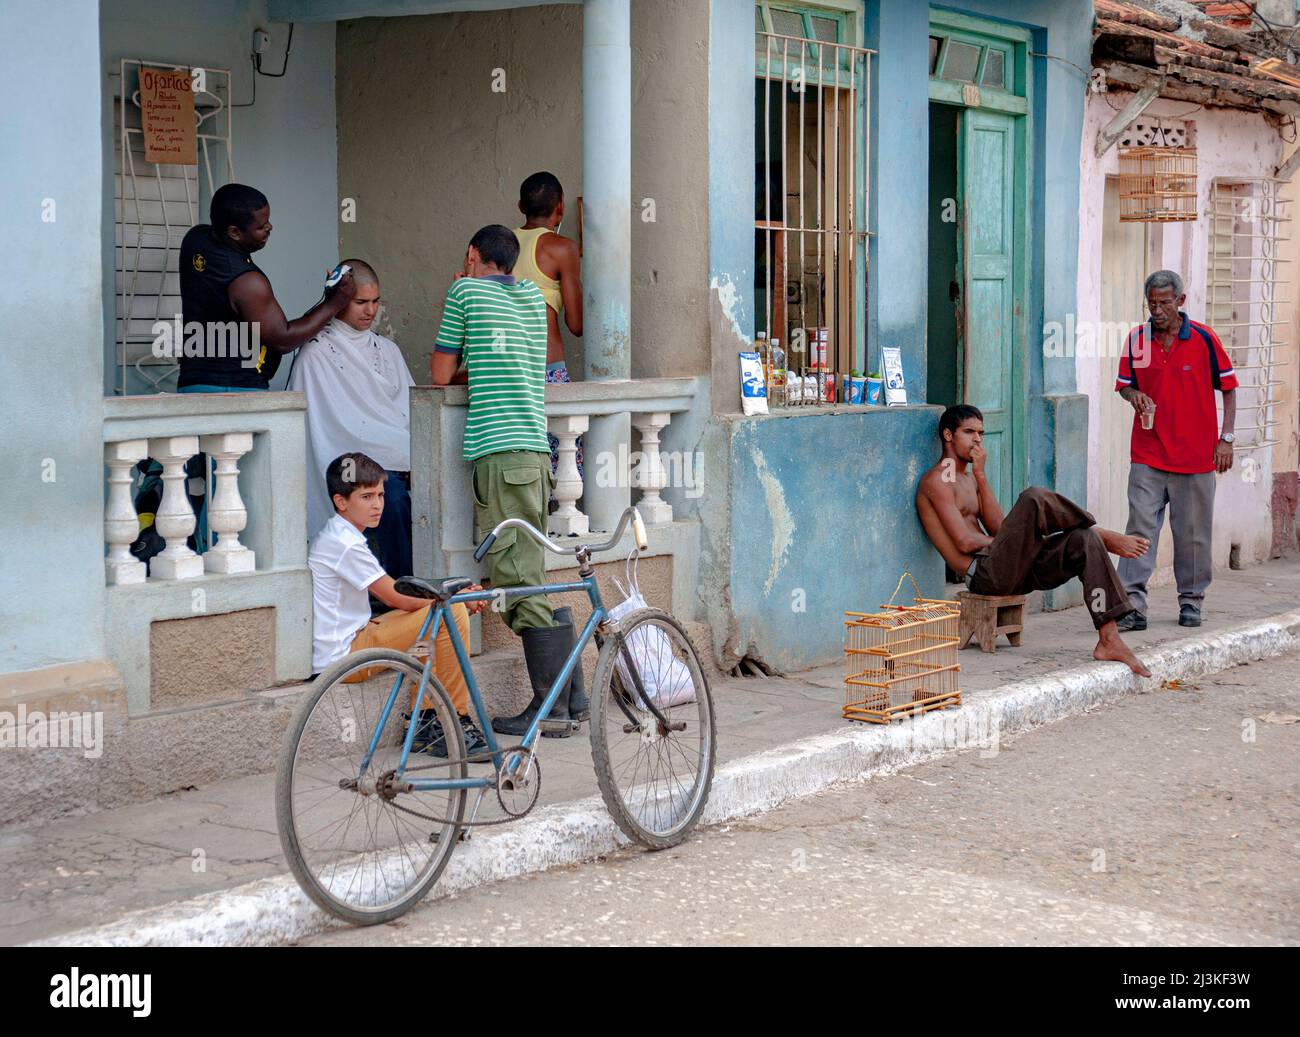 In einem Friseurladen auf der Veranda eines Hauses und neben einem Lebensmittelgeschäft in Trinidad, Kuba, ist vieles los. Stockfoto